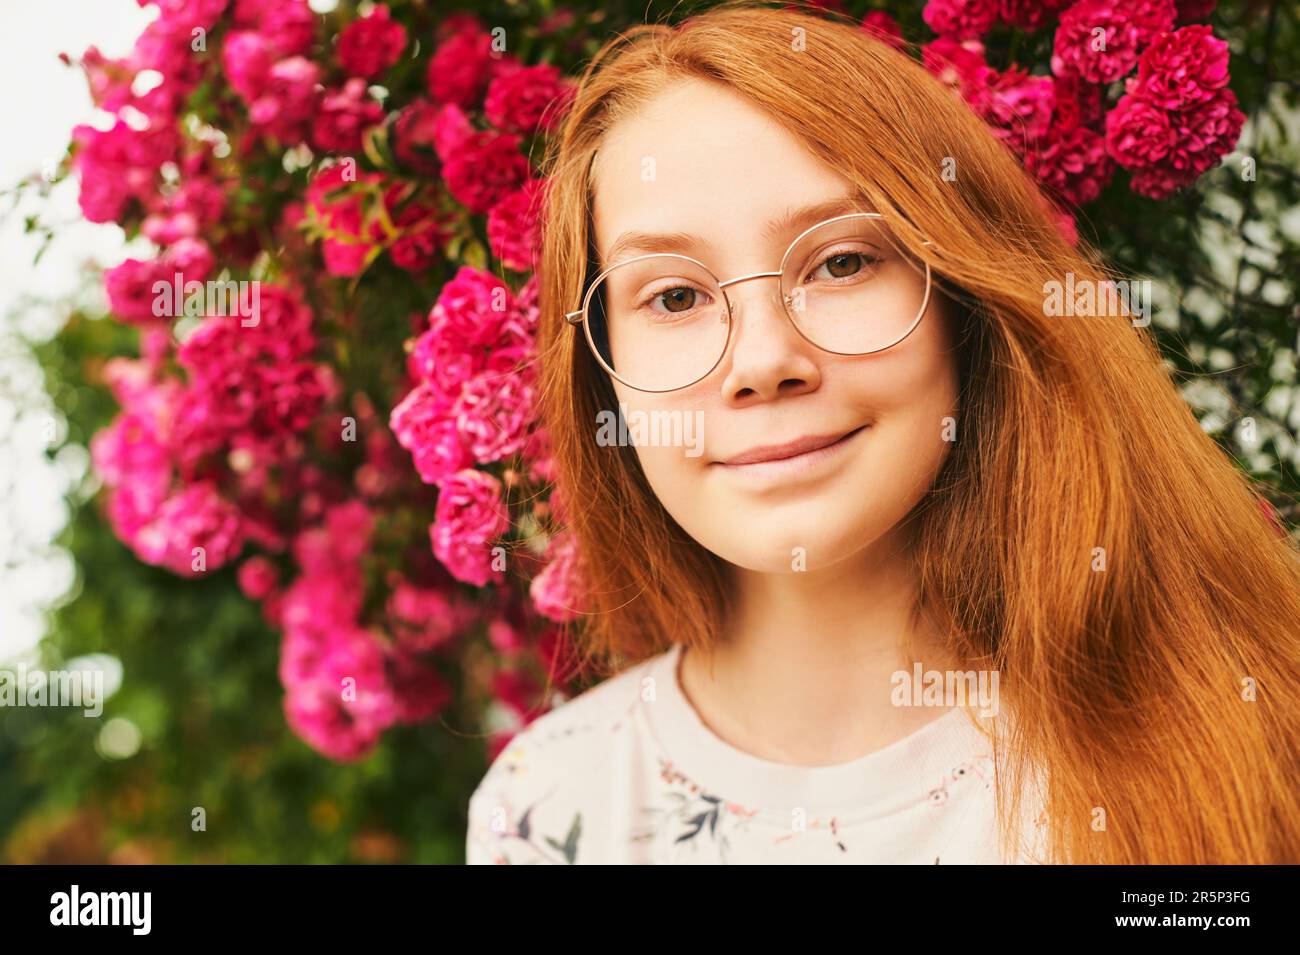 Ritratto in primo piano all'aperto di felice ragazza giovane, indossando occhiali, in posa in giardino fiorito Foto Stock